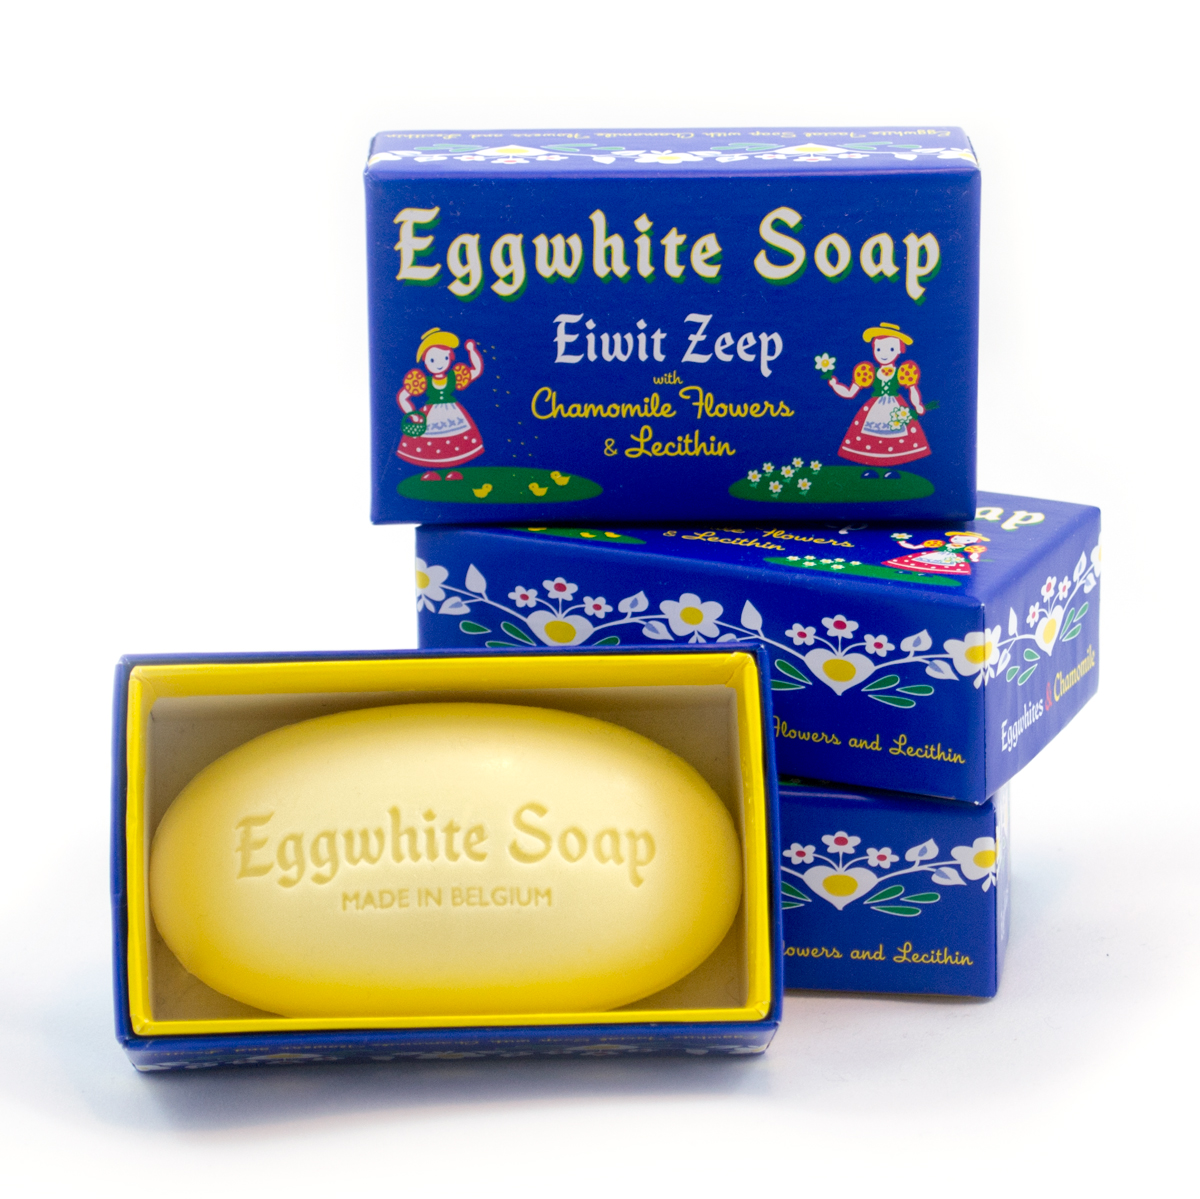 Eggwhite-Soap-1.jpg